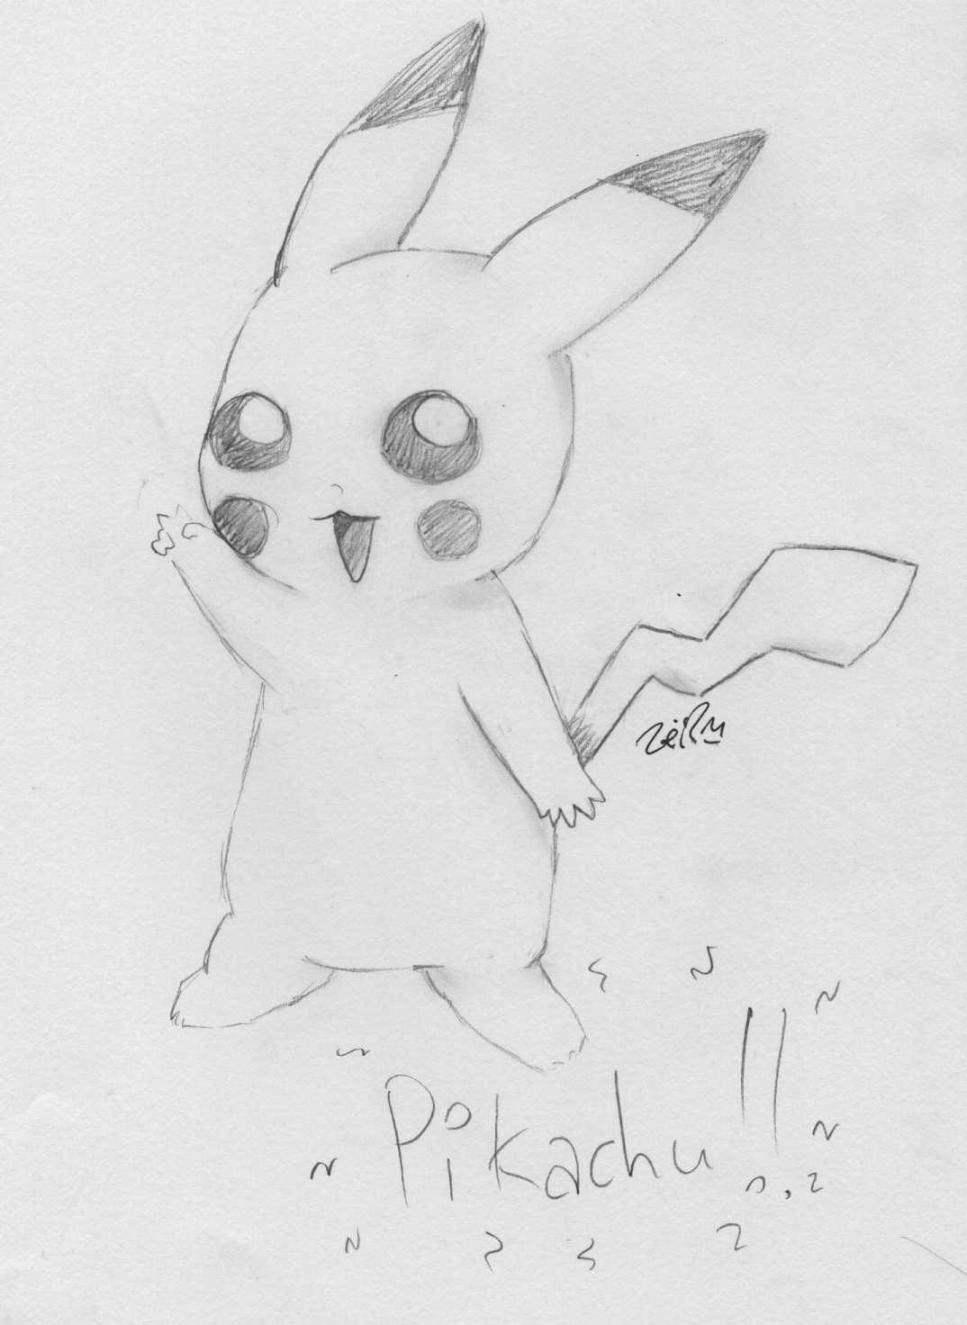 Pikachu pwns! ^o^ by Kaede-chan